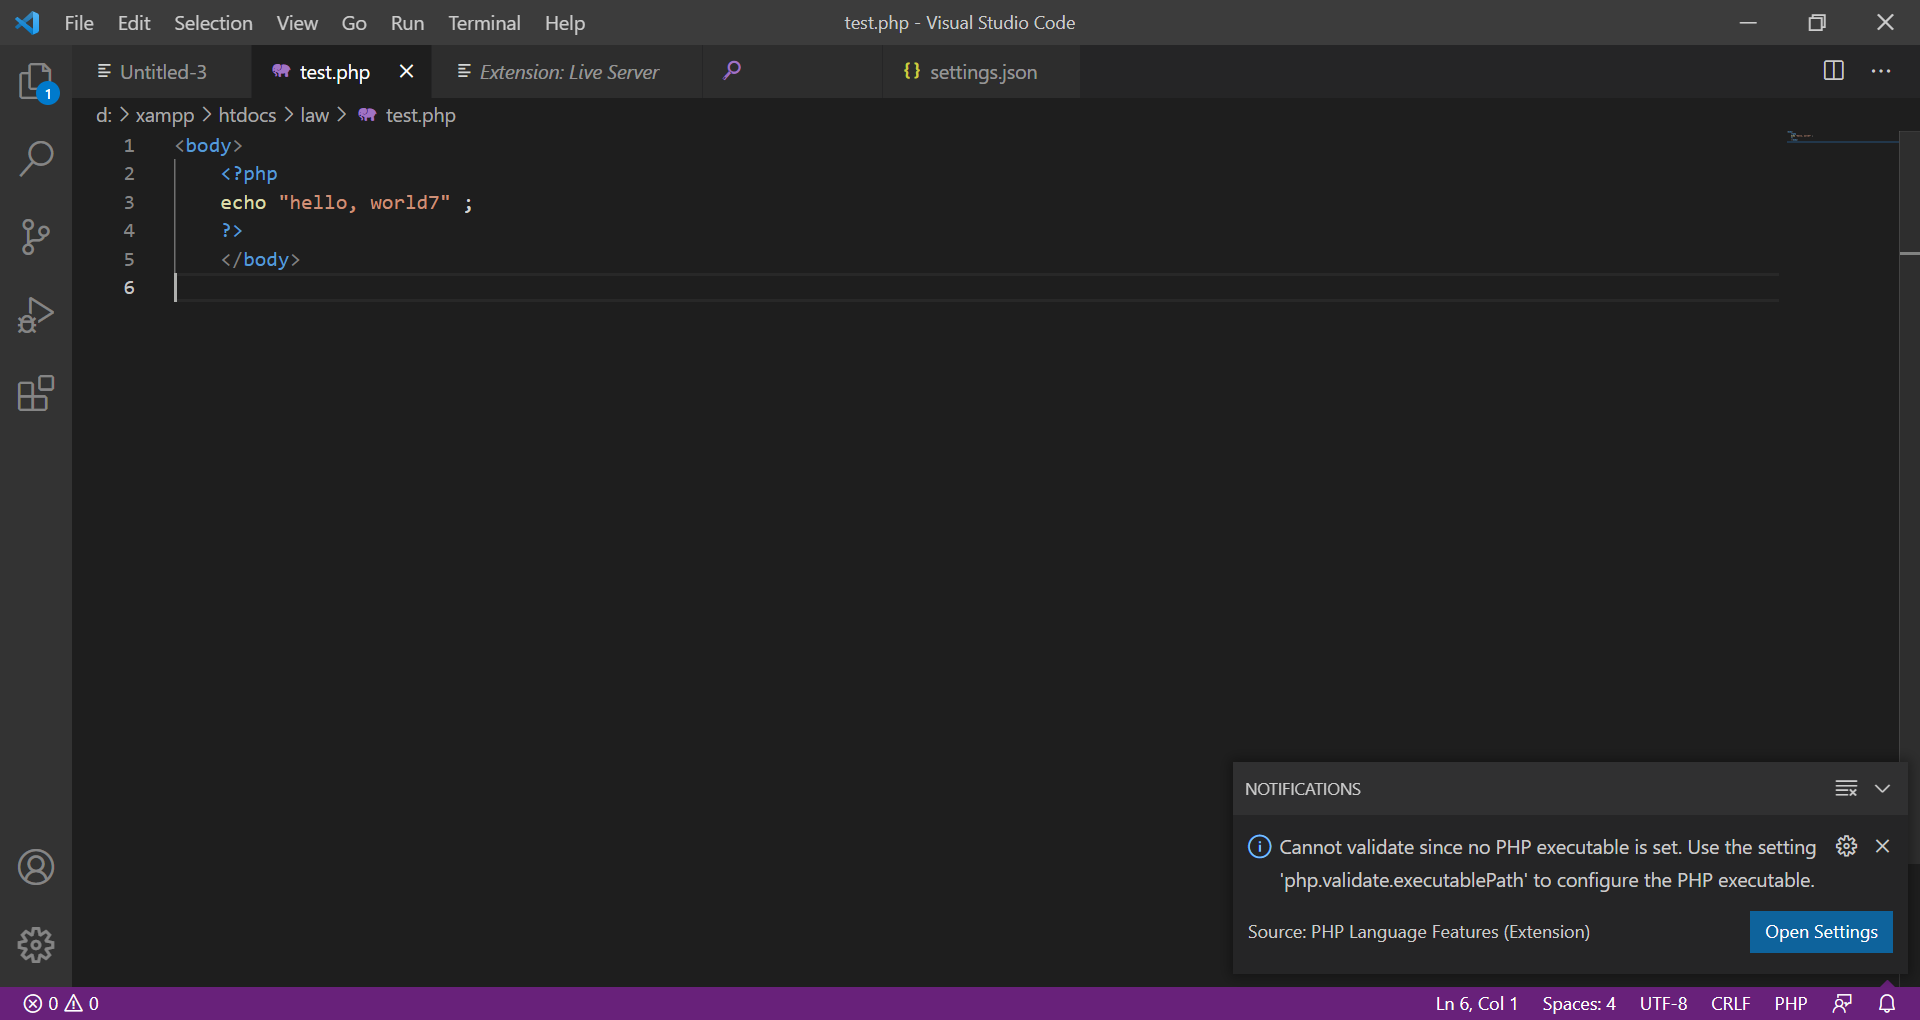 เมื่อเรียกโปรแกรม Visual Studio Code เกิดคำเตือนดังกล่าว เกิดจากอะไรครับ -  Pantip